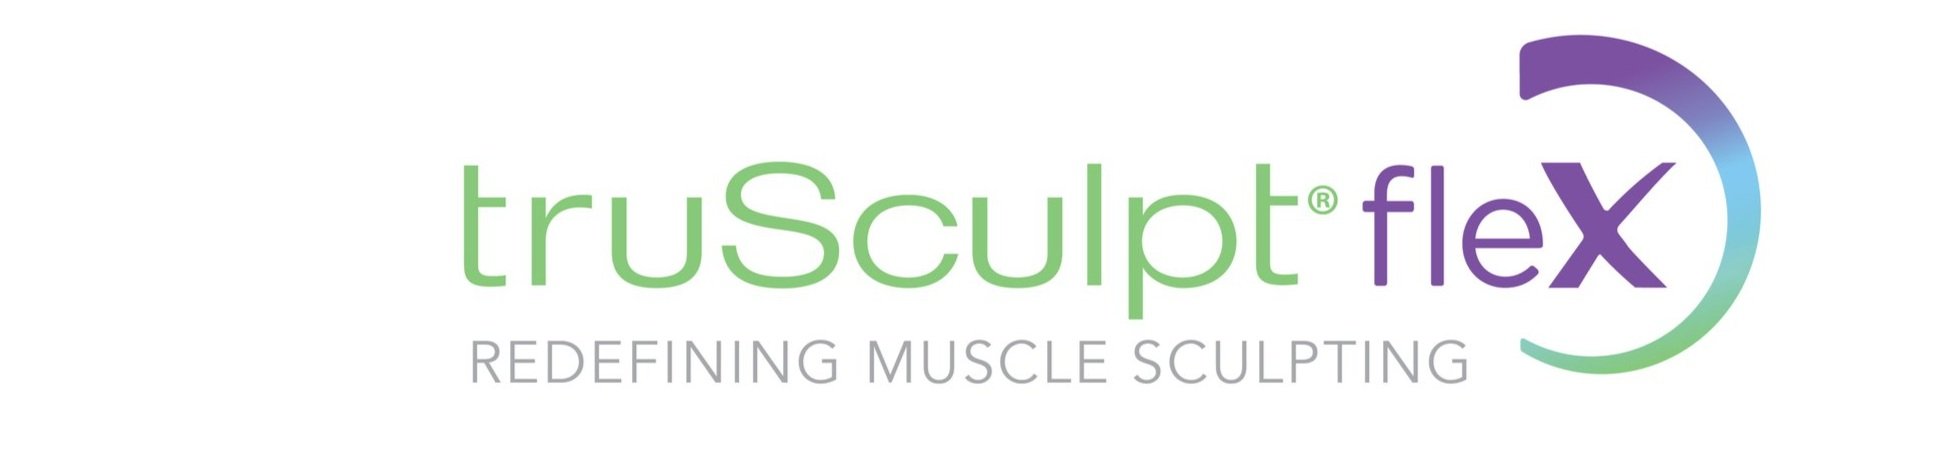 Trusculpt Flex - Muscle Sculpting — Image Clinic